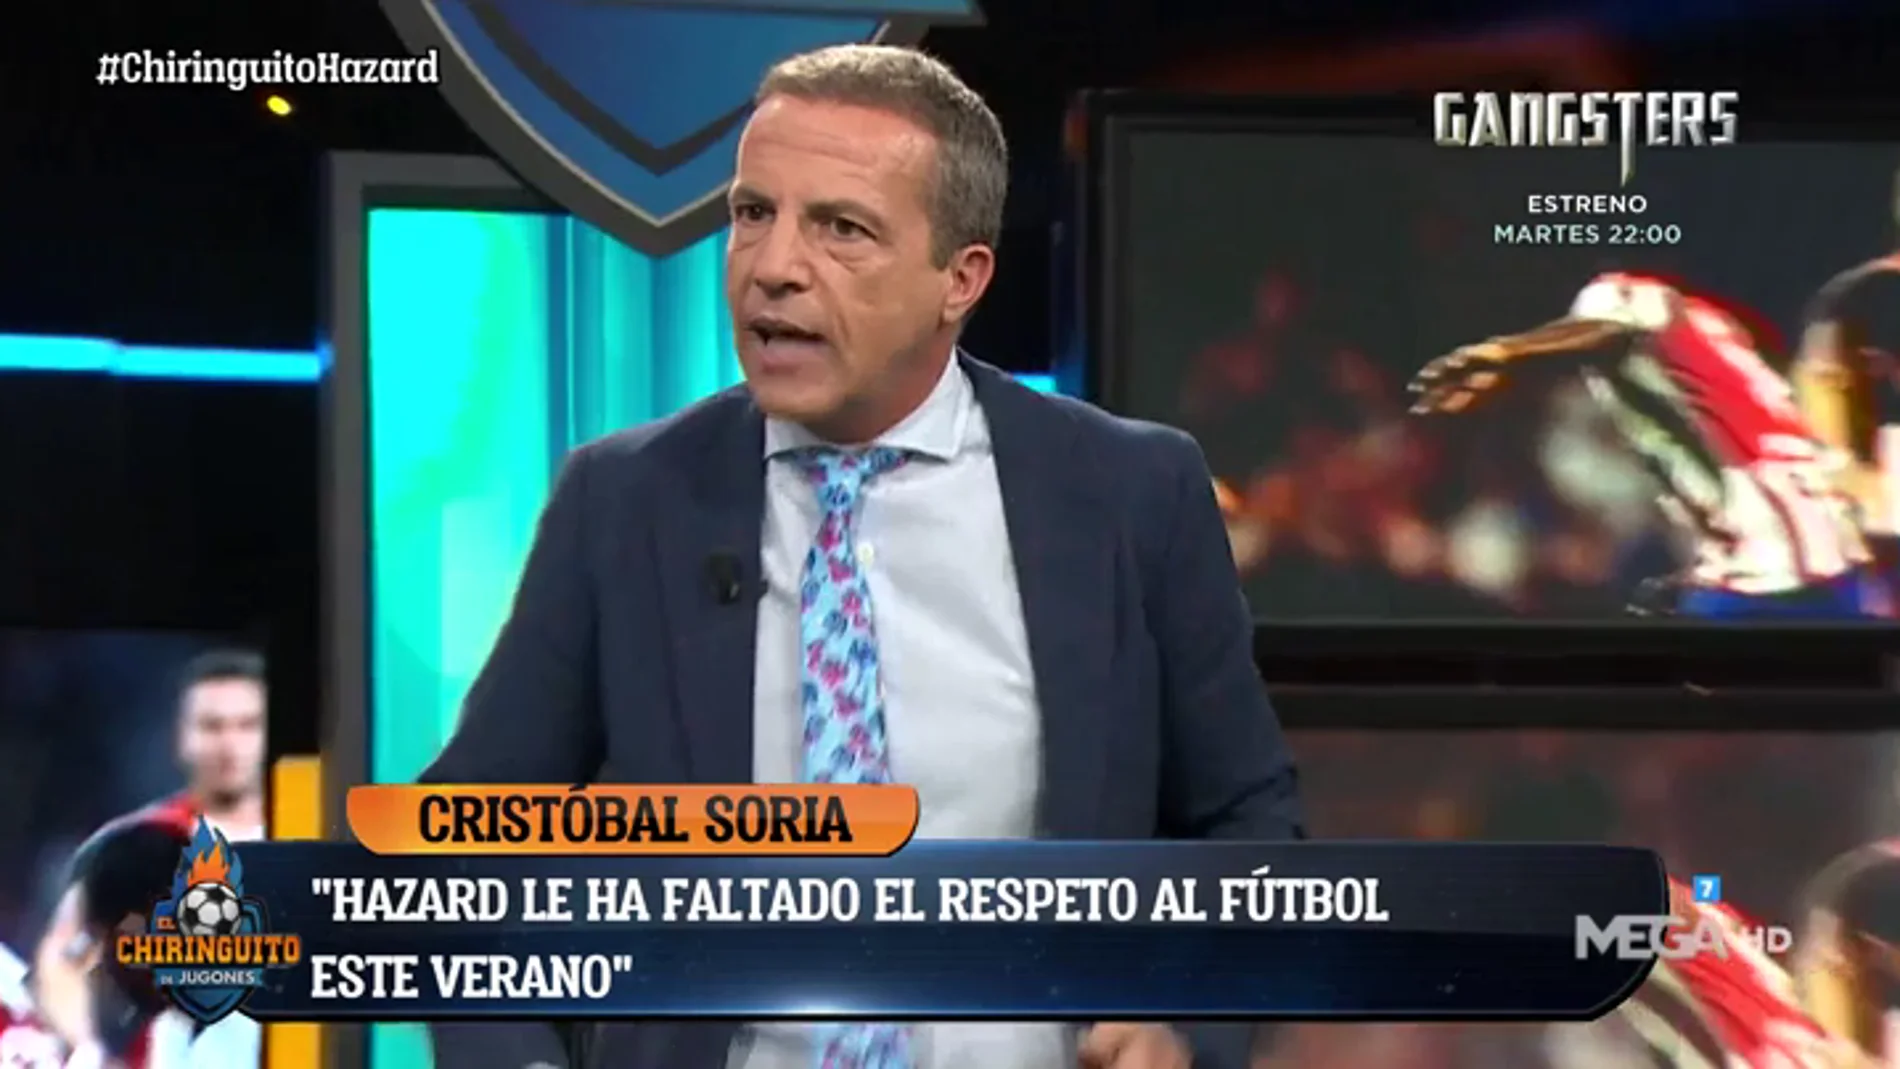 Cristóbal Soria: "Hazard le ha faltado al respeto al fútbol durante verano. Tiene 6 kilos más"